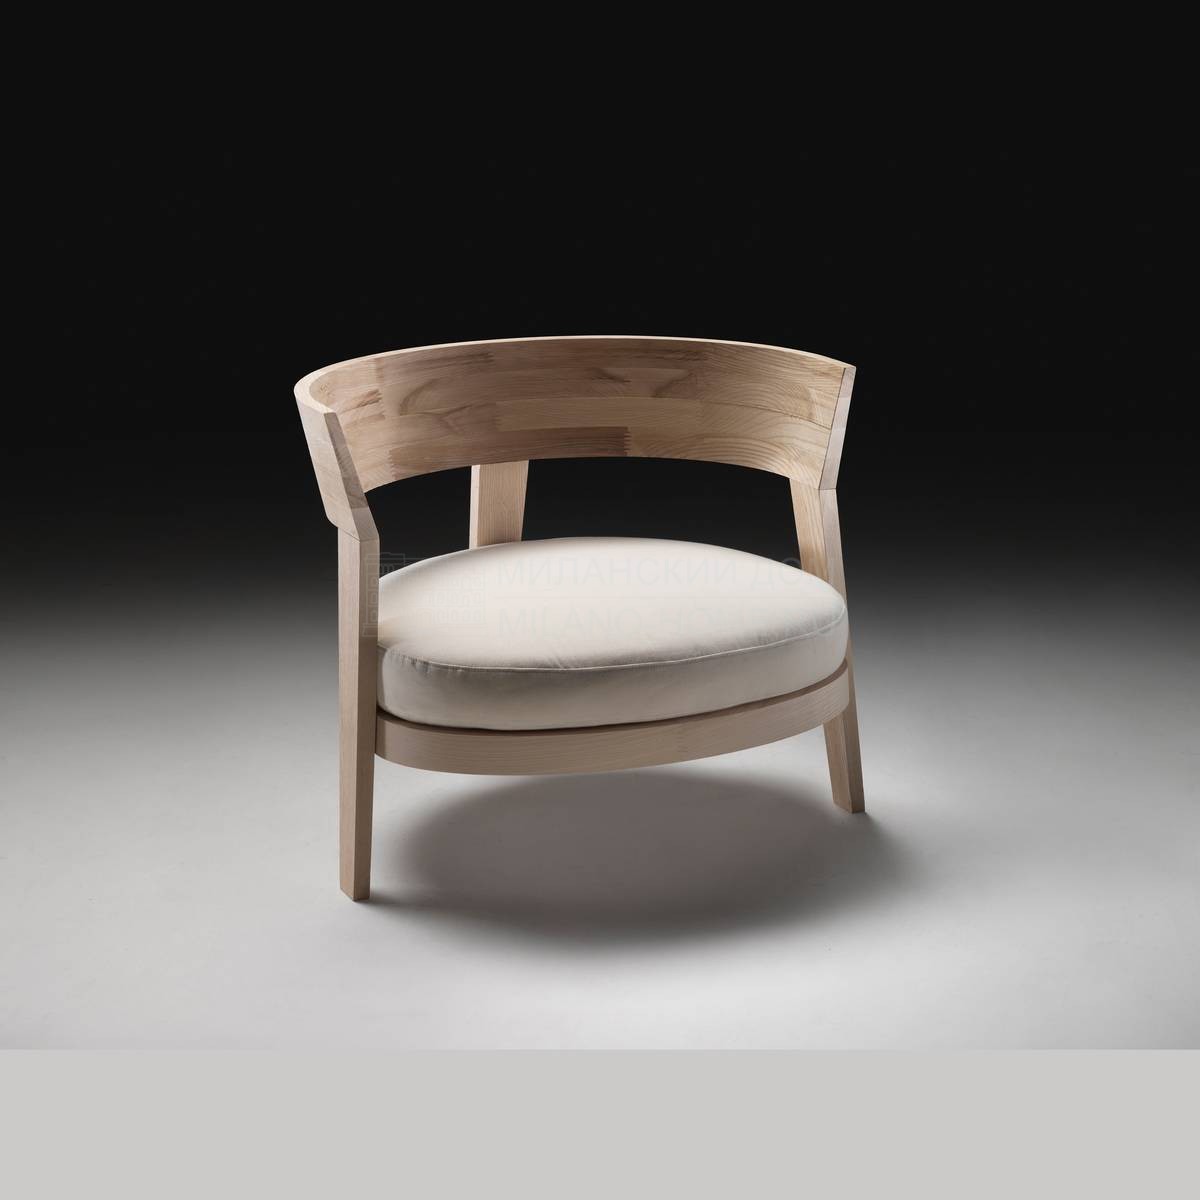 Круглое кресло Abbracci / armchair из Италии фабрики FLEXFORM